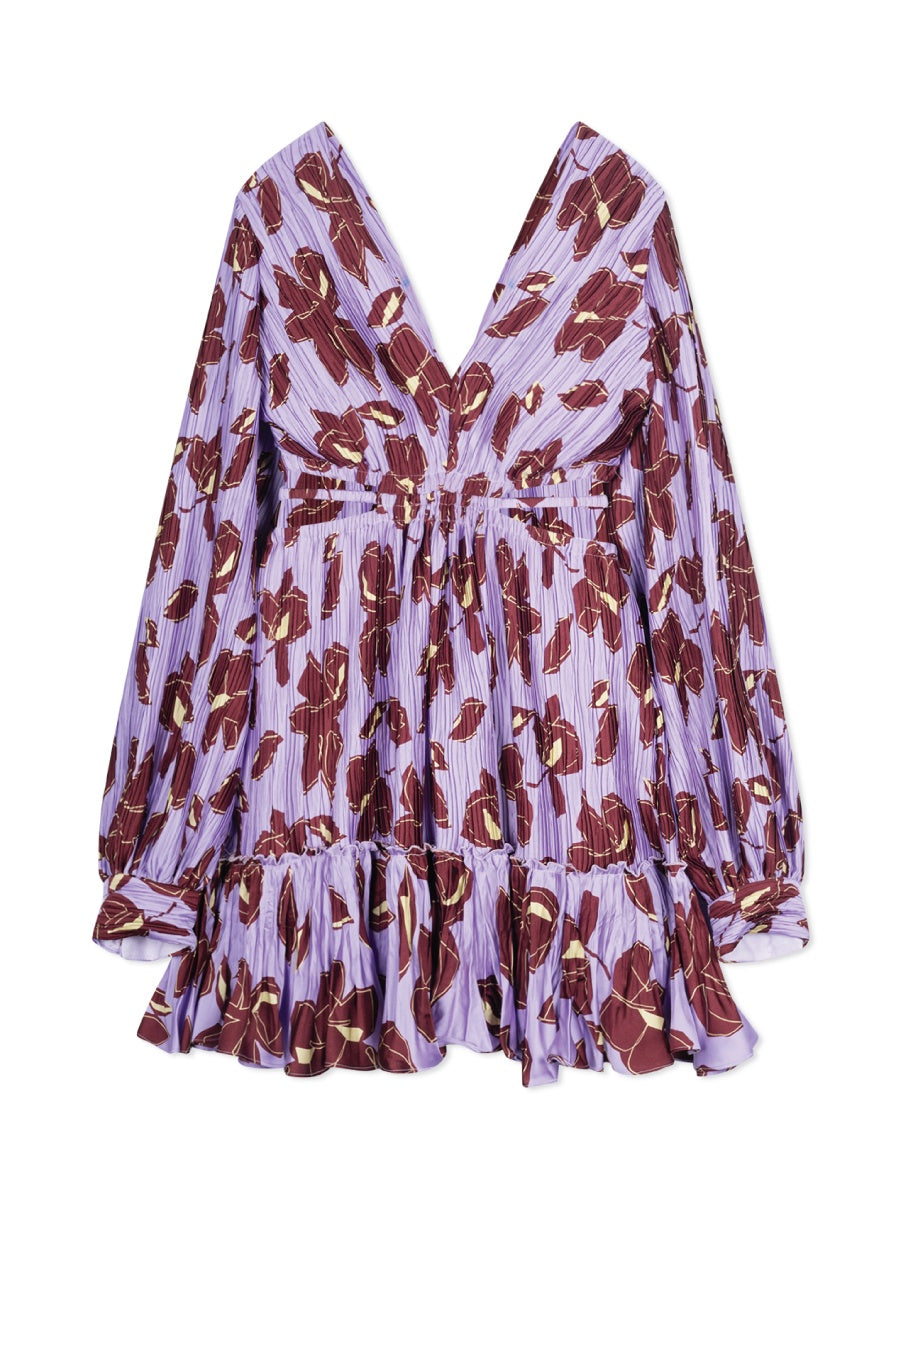 Jonathan Simkhai Londyn Floral Cut Out Mini Dress - Lavender Print